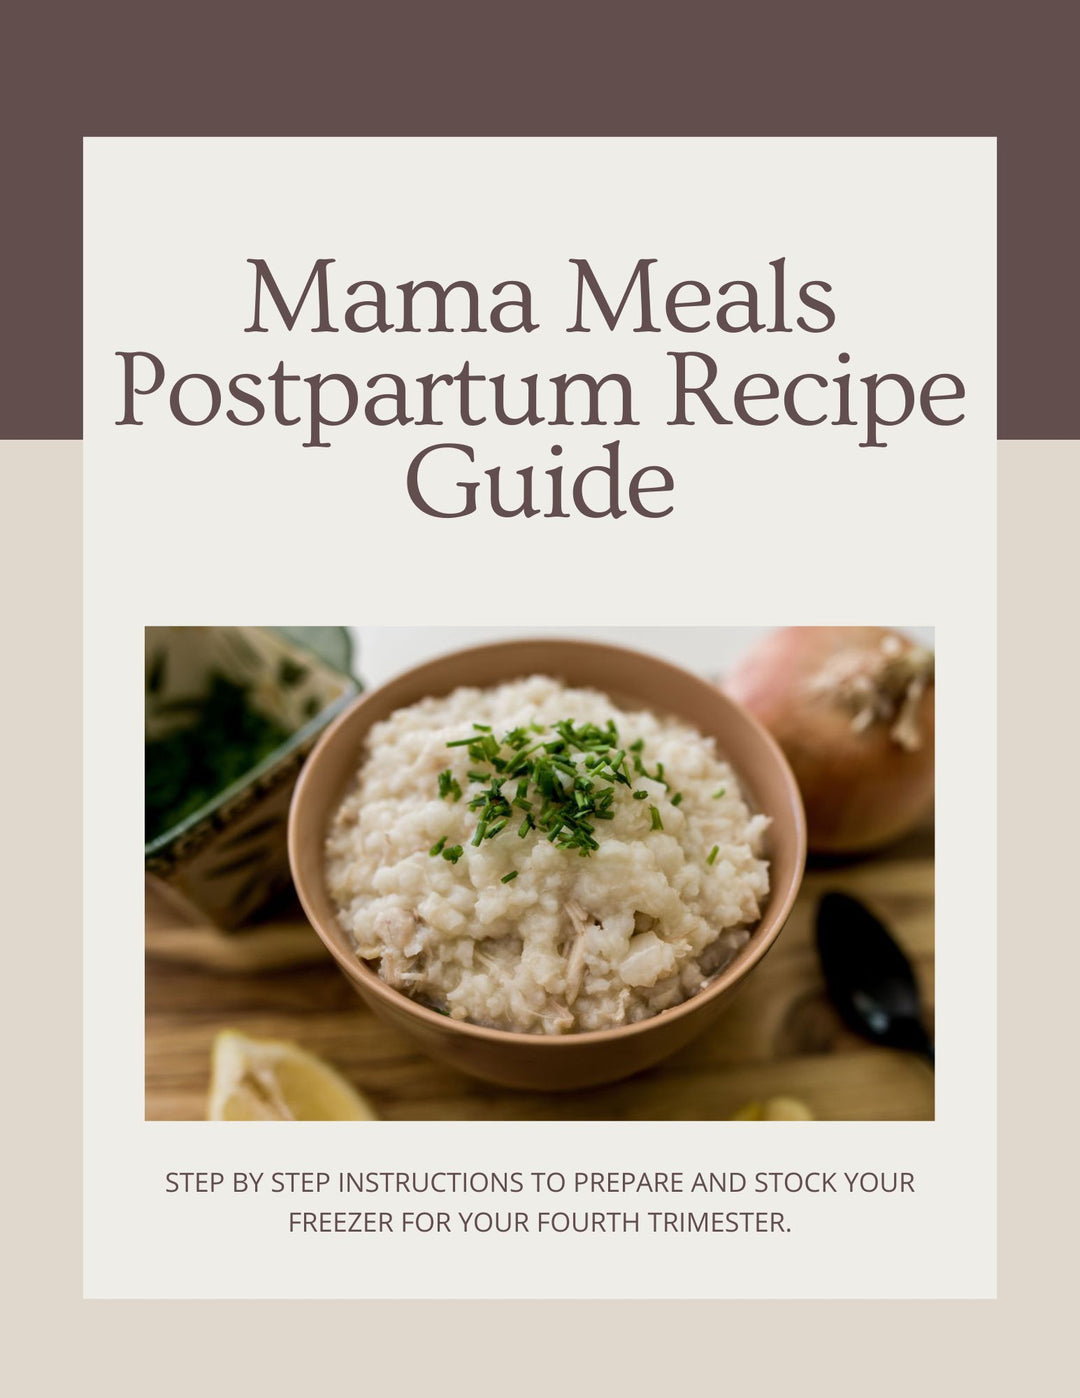 Postpartum Recipe Guide